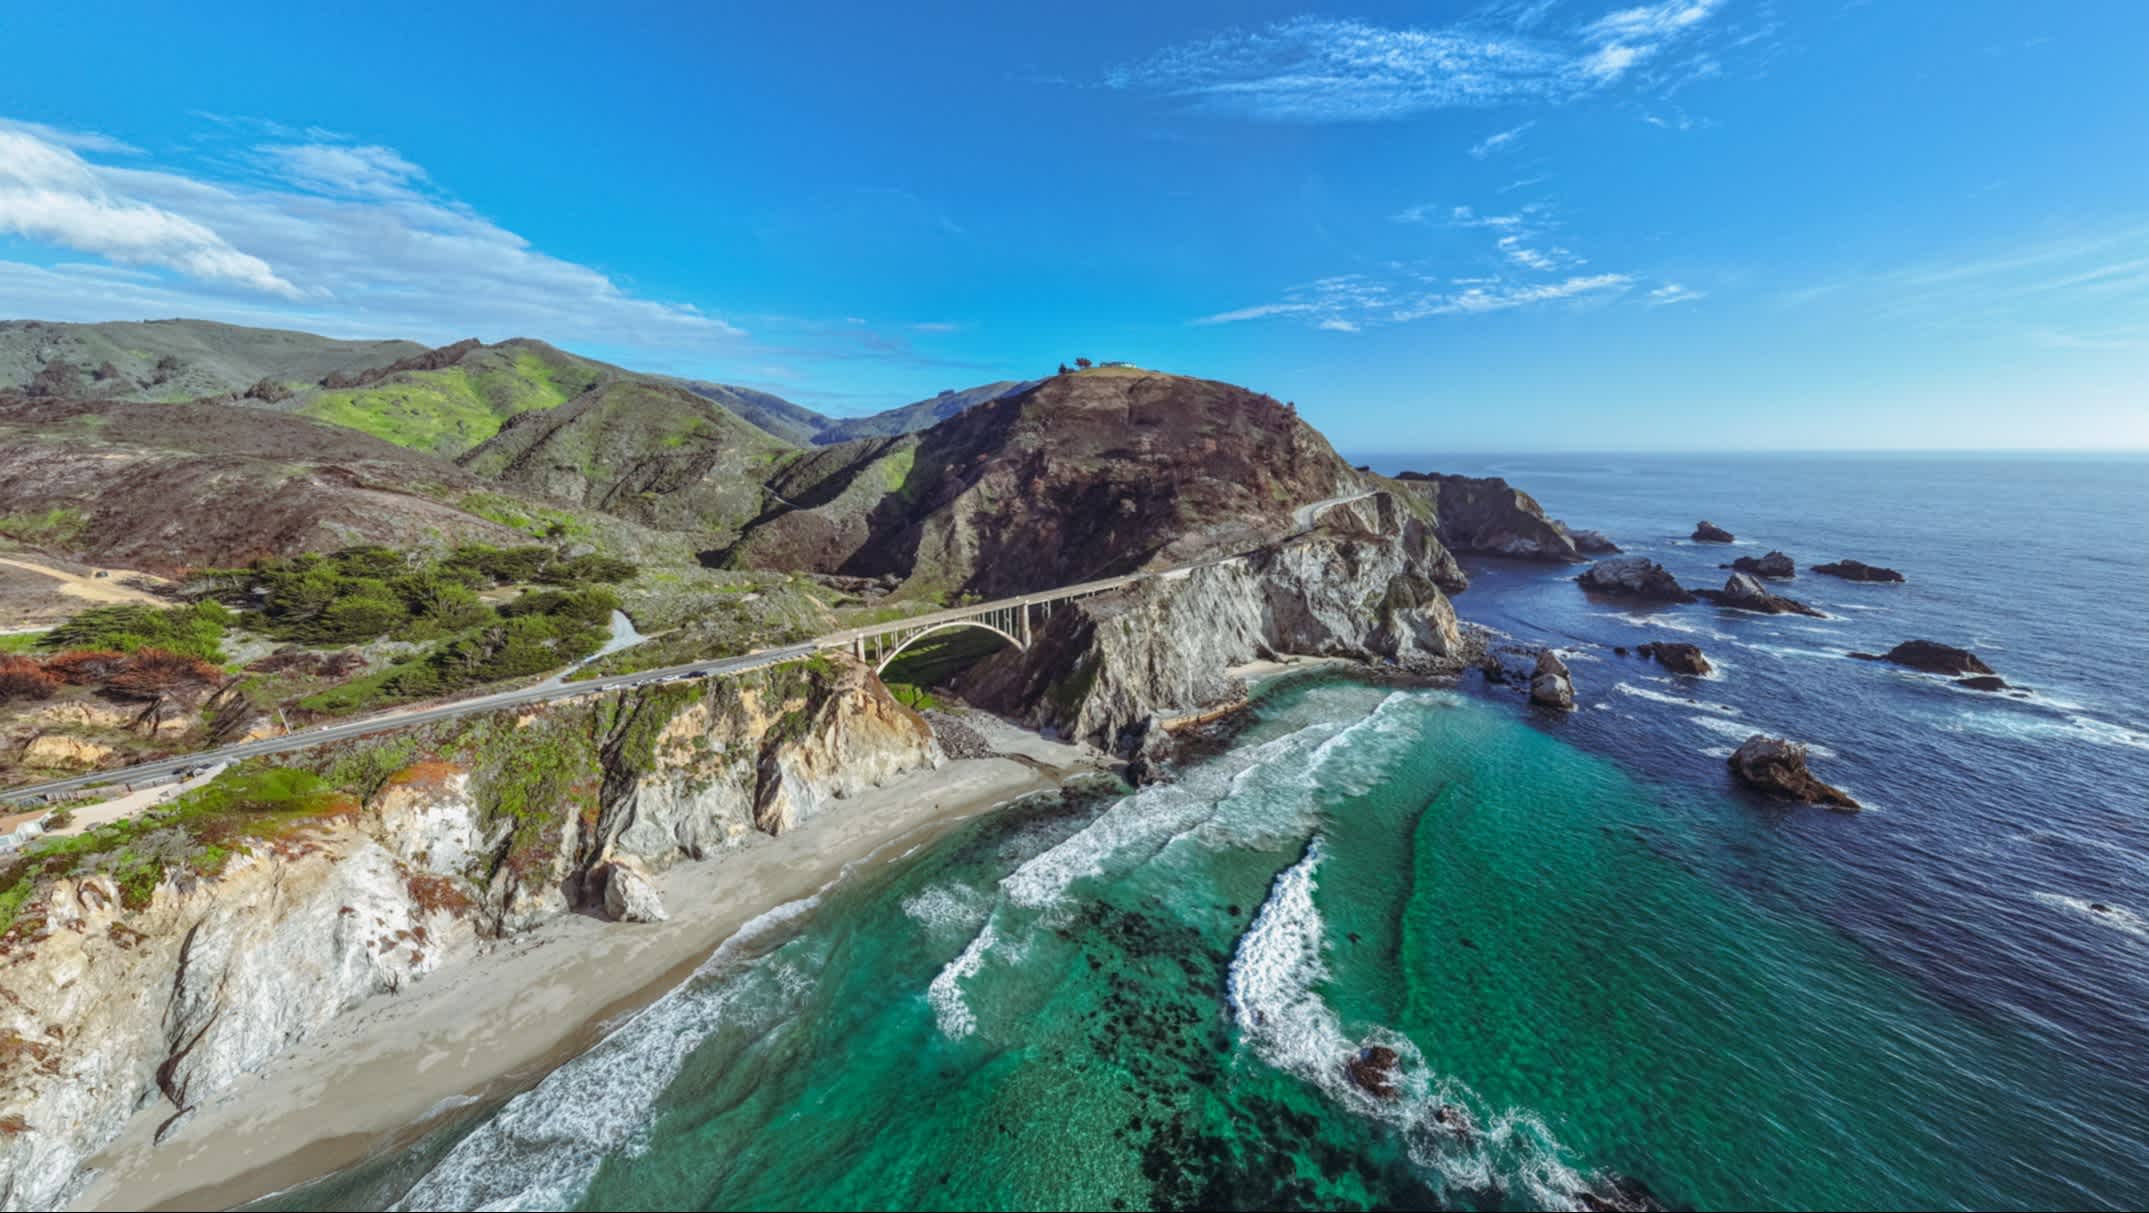 Der Pacific Highway überquert eine alte Brücke an der Küste von Big Sur in Kalifornien, USA.

